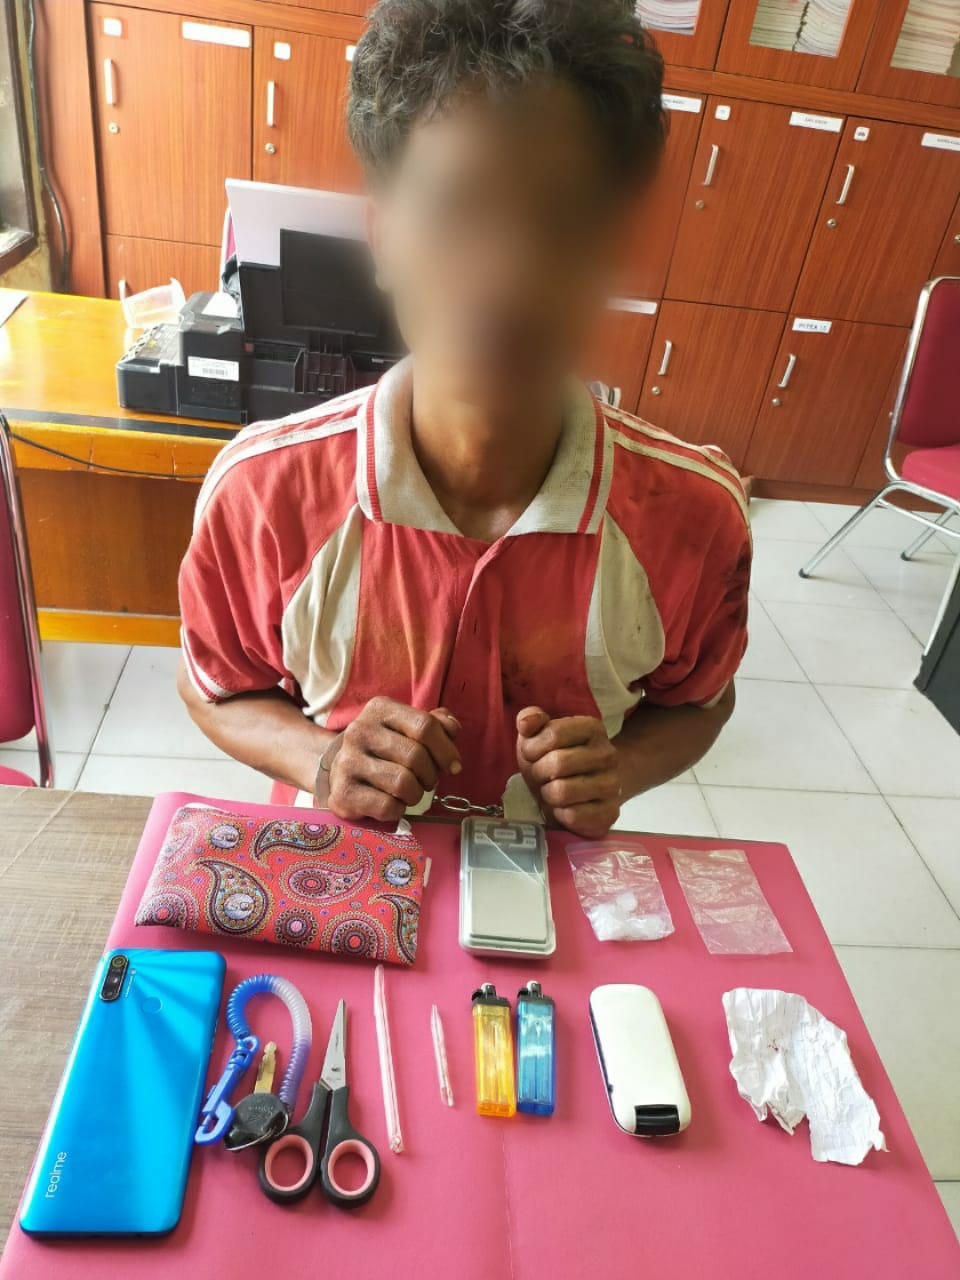 Polres Siak Kembali Amankan Seorang Pria Pengedar Narkotika Jenis Shabu di Pusako